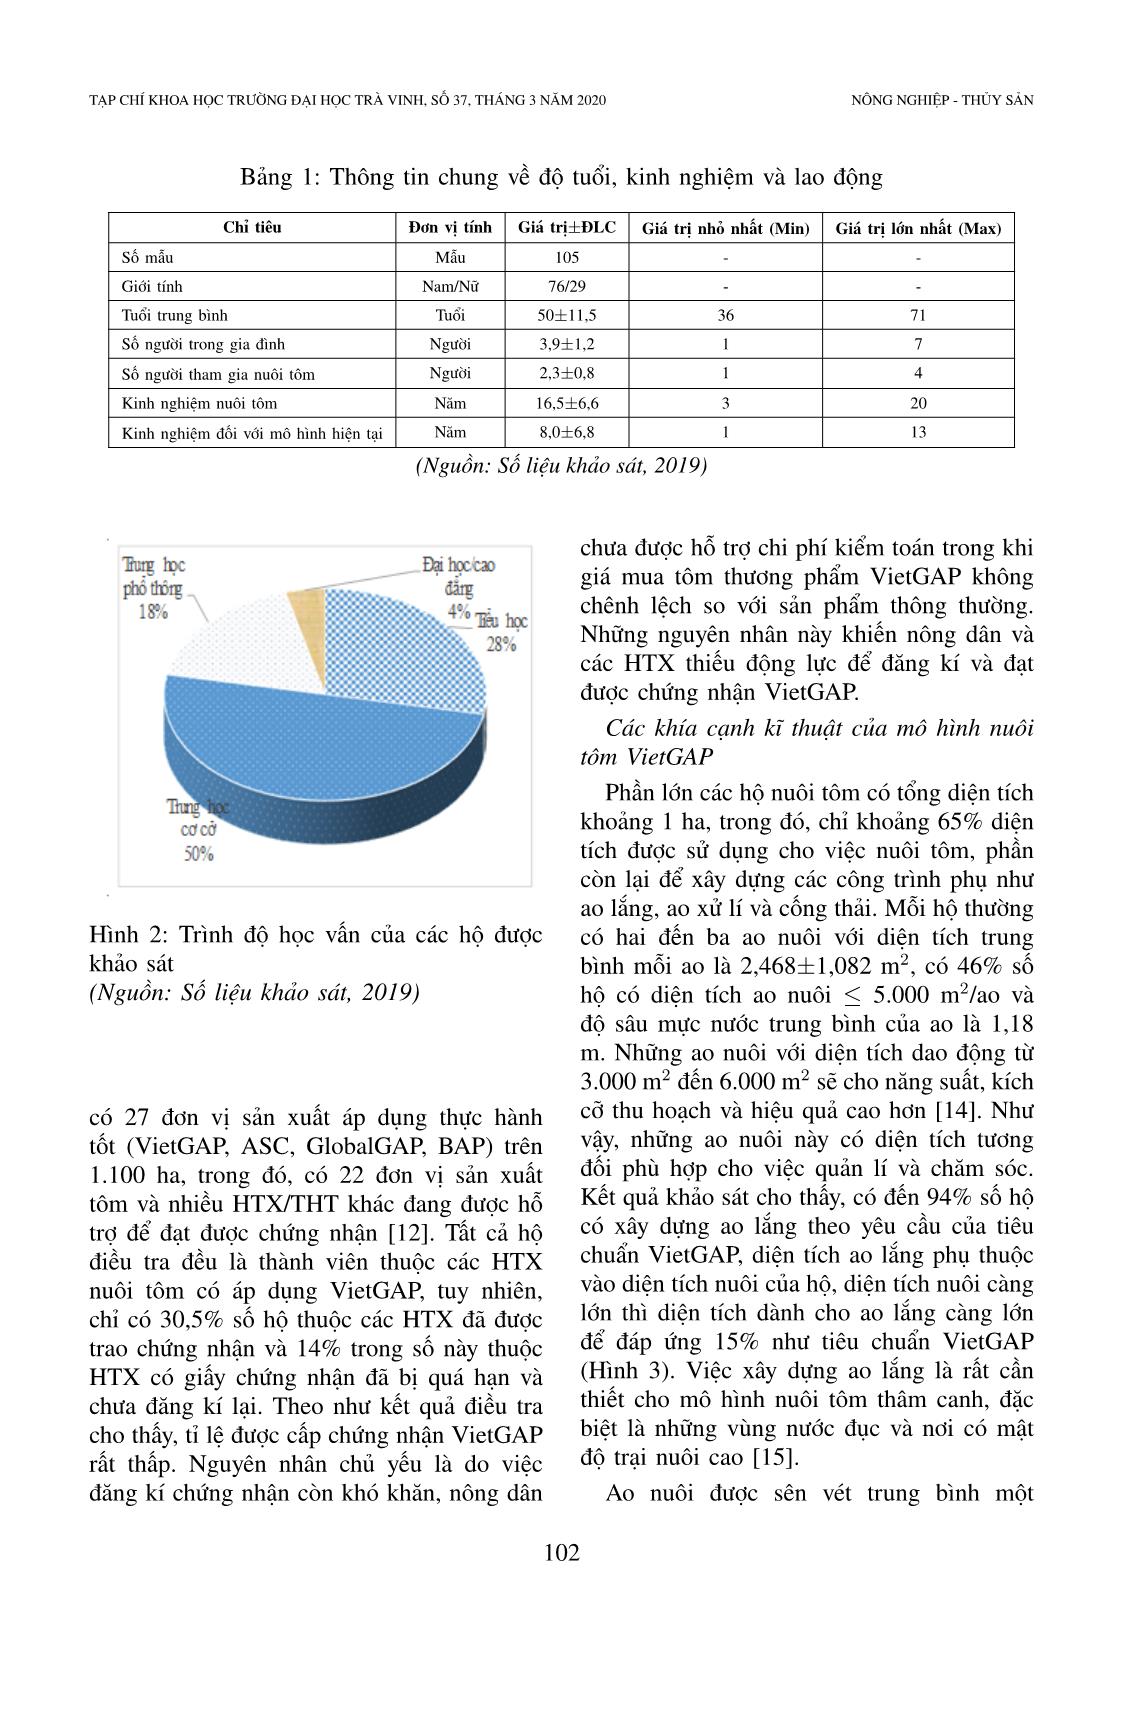 Hiện trạng và vai trò của chứng nhận Vietgap trong nuôi tôm: Nghiên cứu trường hợp nuôi tôm thẻ chân trắng ở tỉnh Sóc Trăng, Việt Nam trang 5